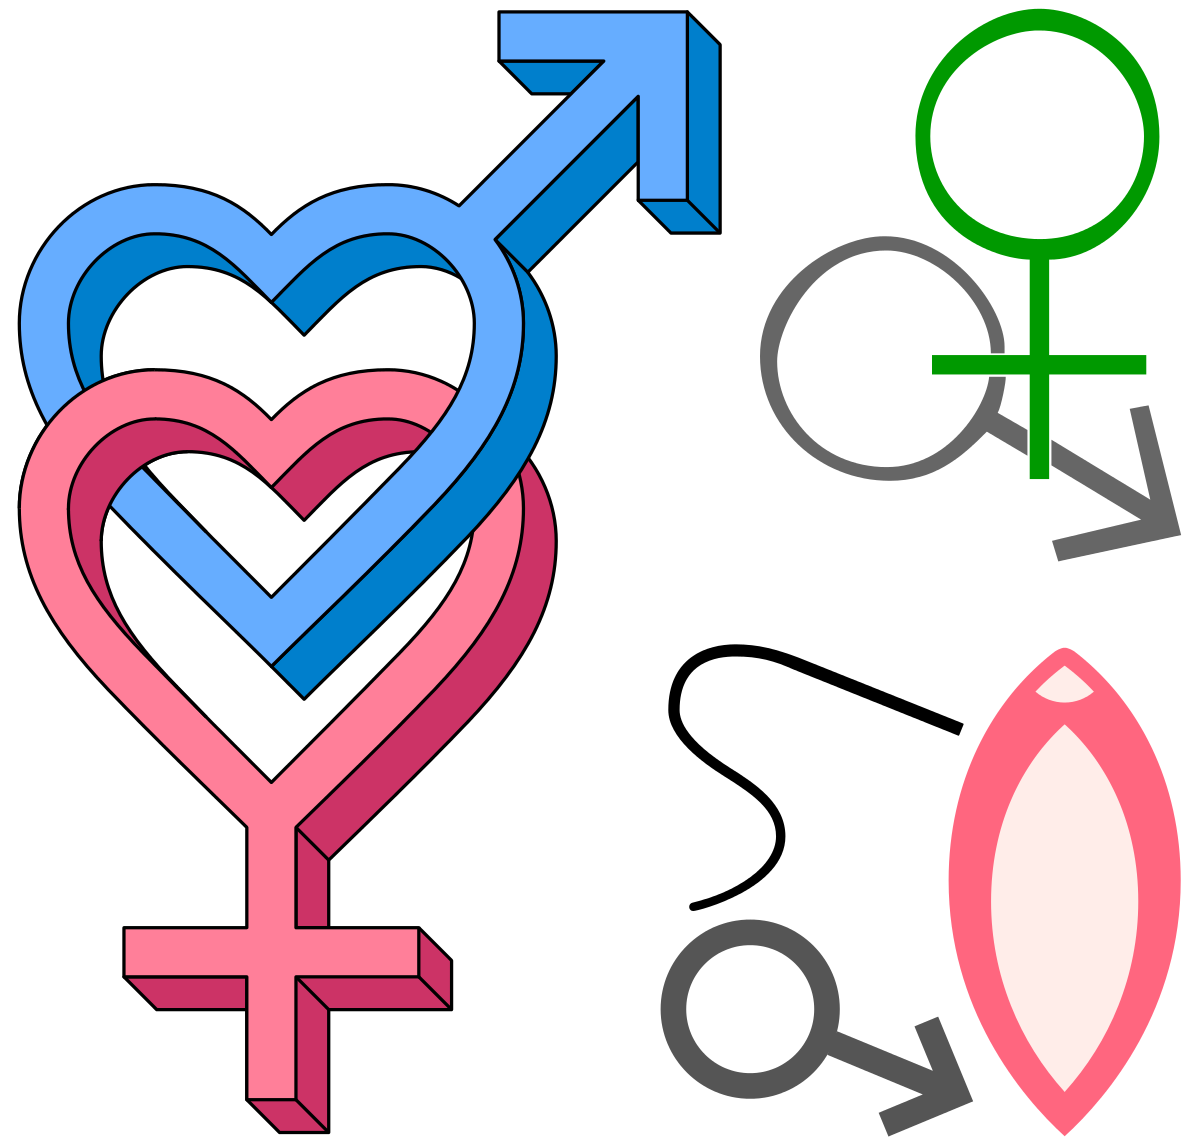 File:Battle-sexes-jocular-symbols-.svg - Wikipedia.